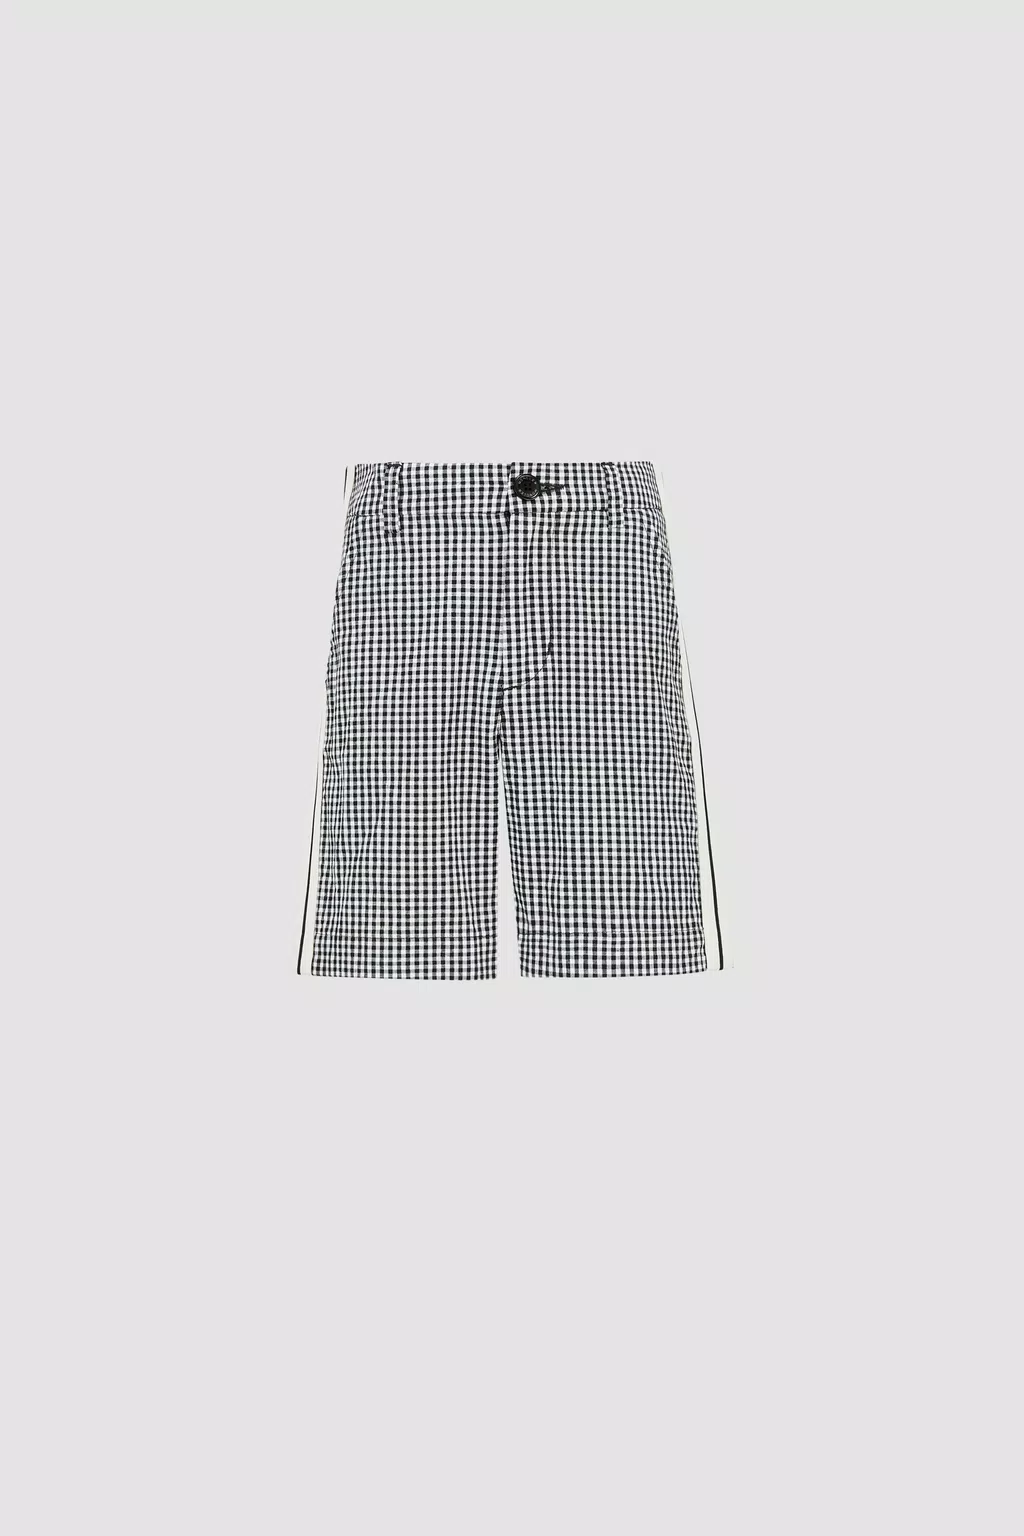 Bermuda-Shorts mit Gingham-Print Jungen Schwarz & Weiß Moncler 1